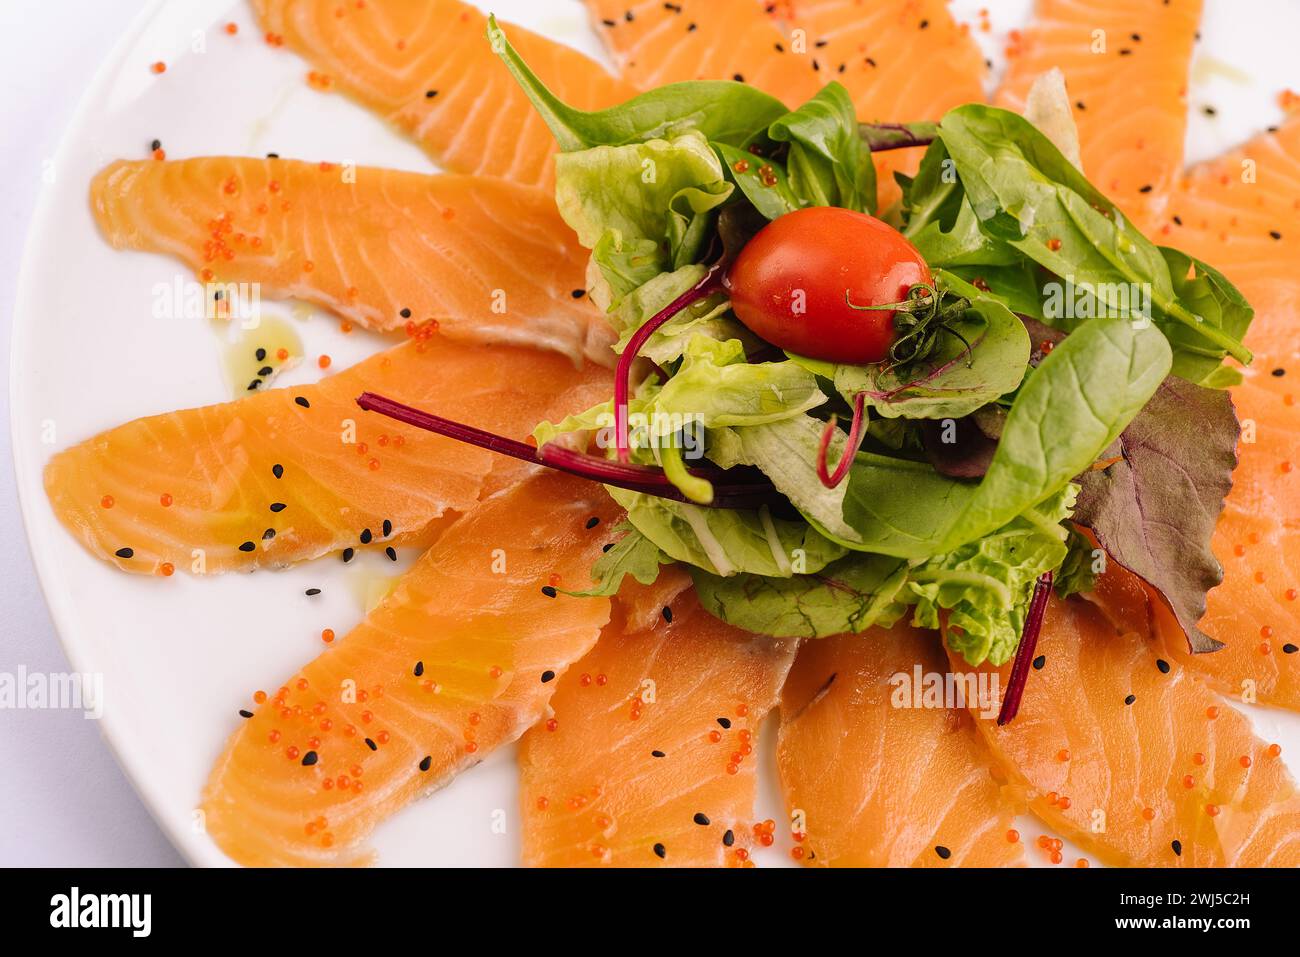 Tranches de filet de saumon cru sur assiette blanche Banque D'Images